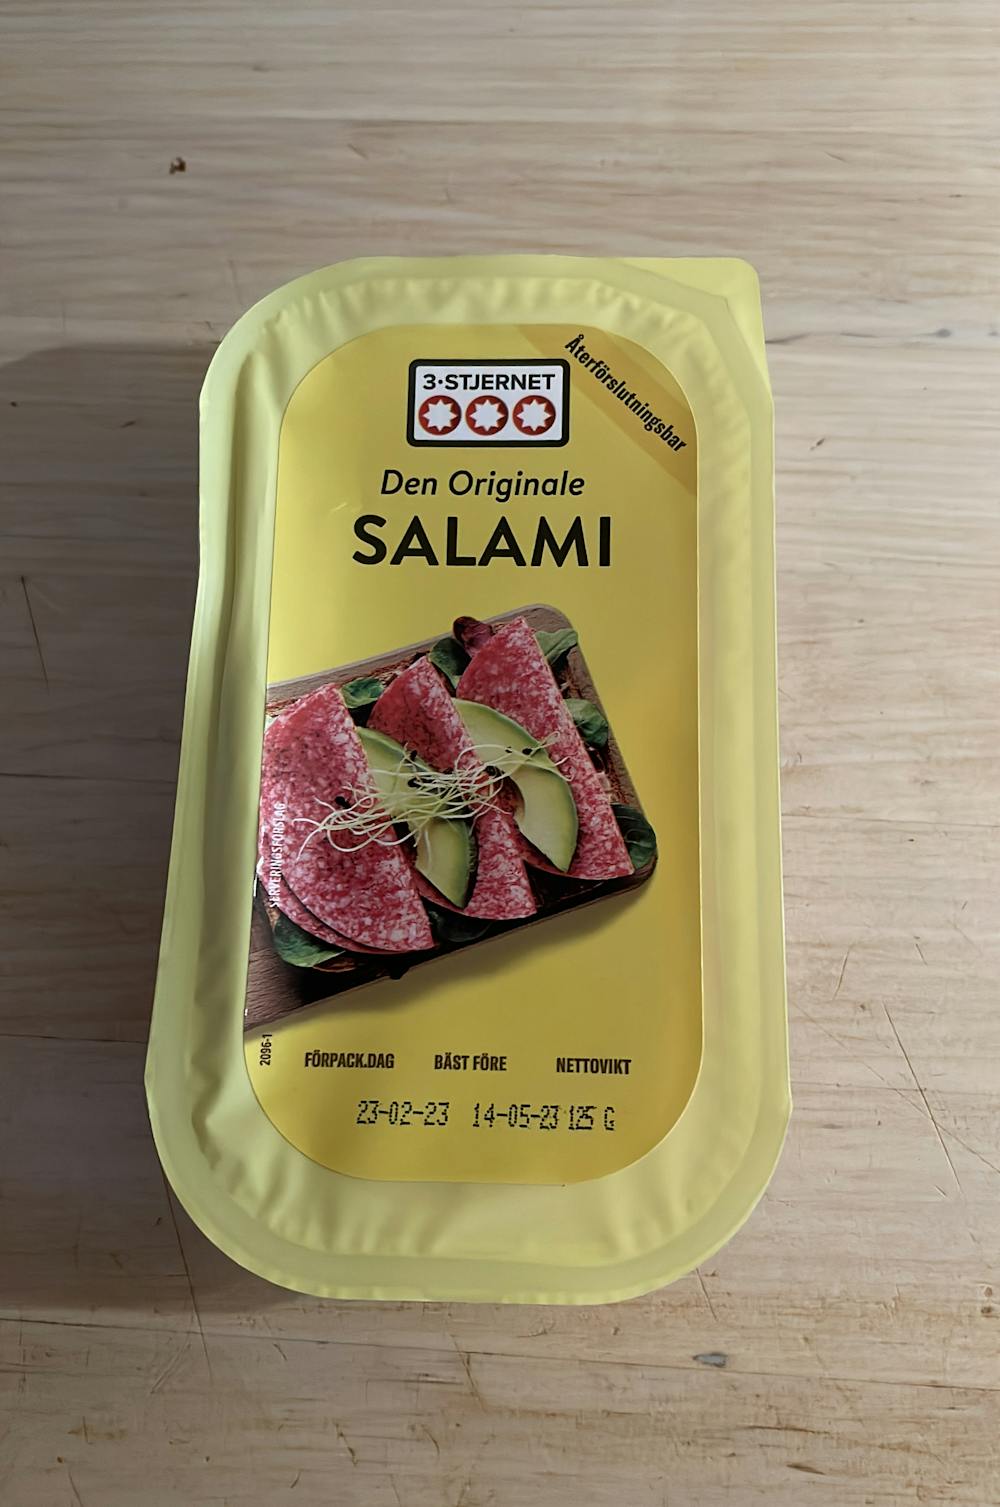 Den Originale Salami, 3-Stjernet